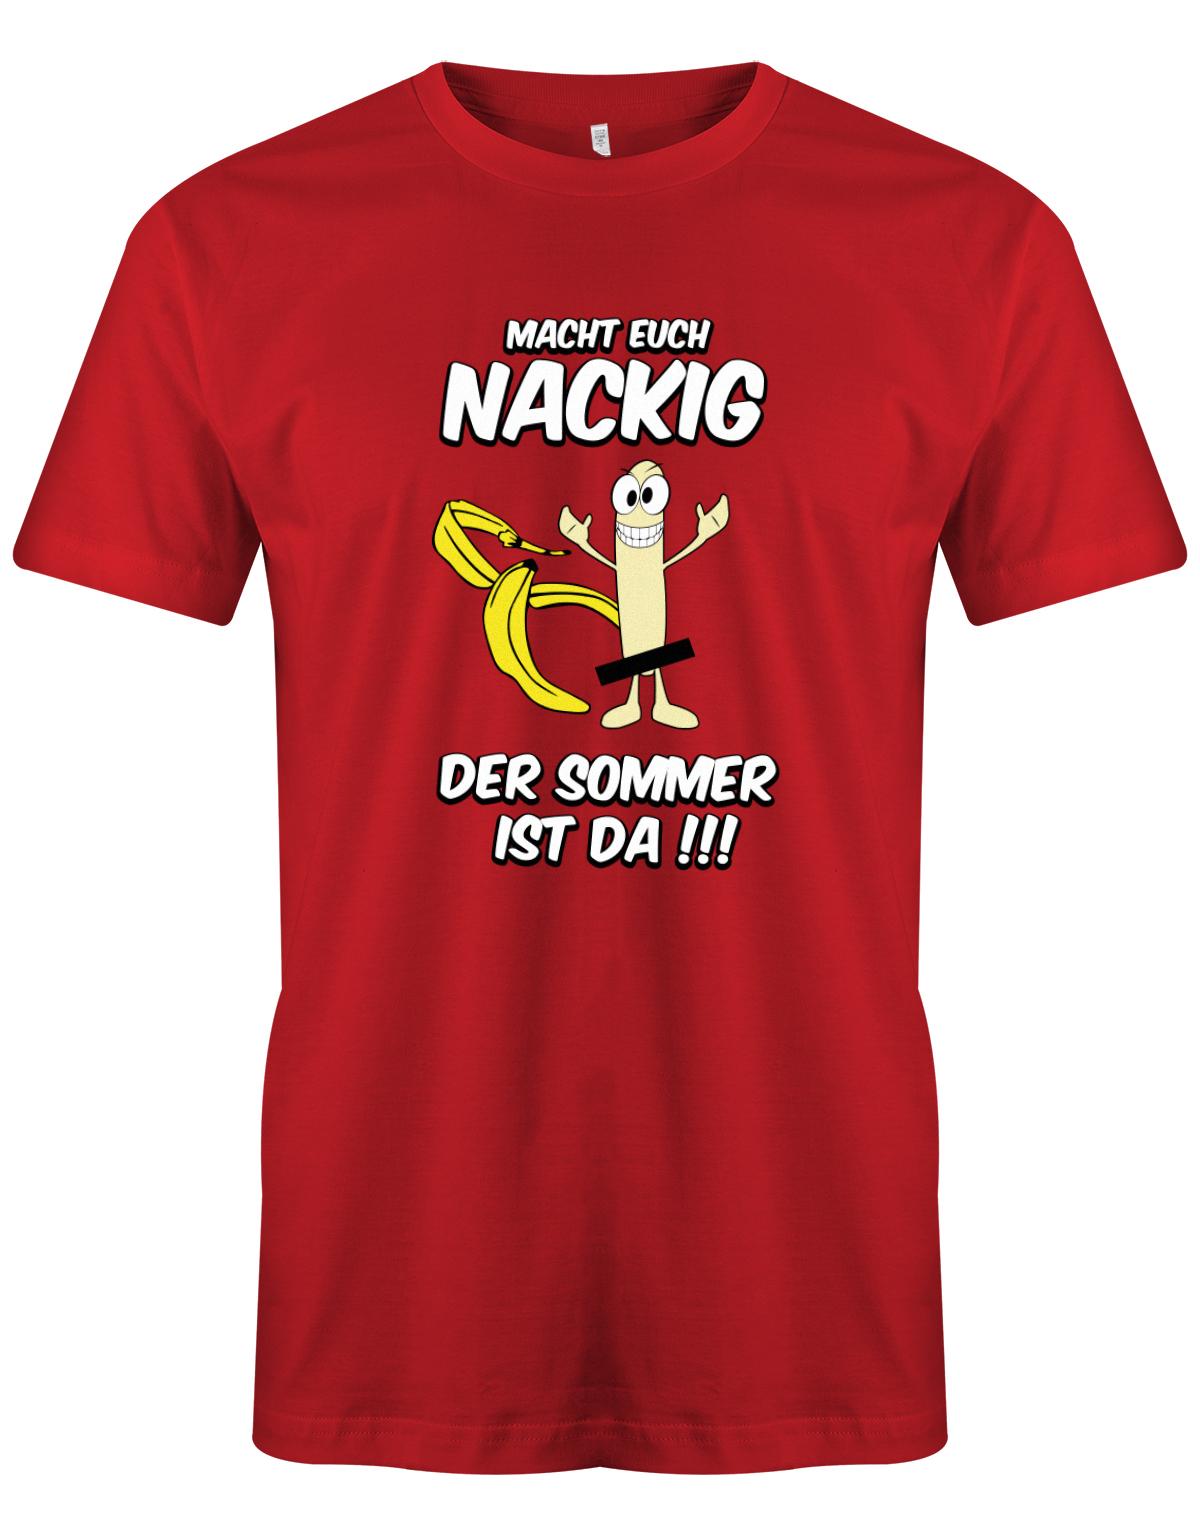 Macht-euch-nackig-dder-Sommer-ist-da-Herren-Shirt-Rot